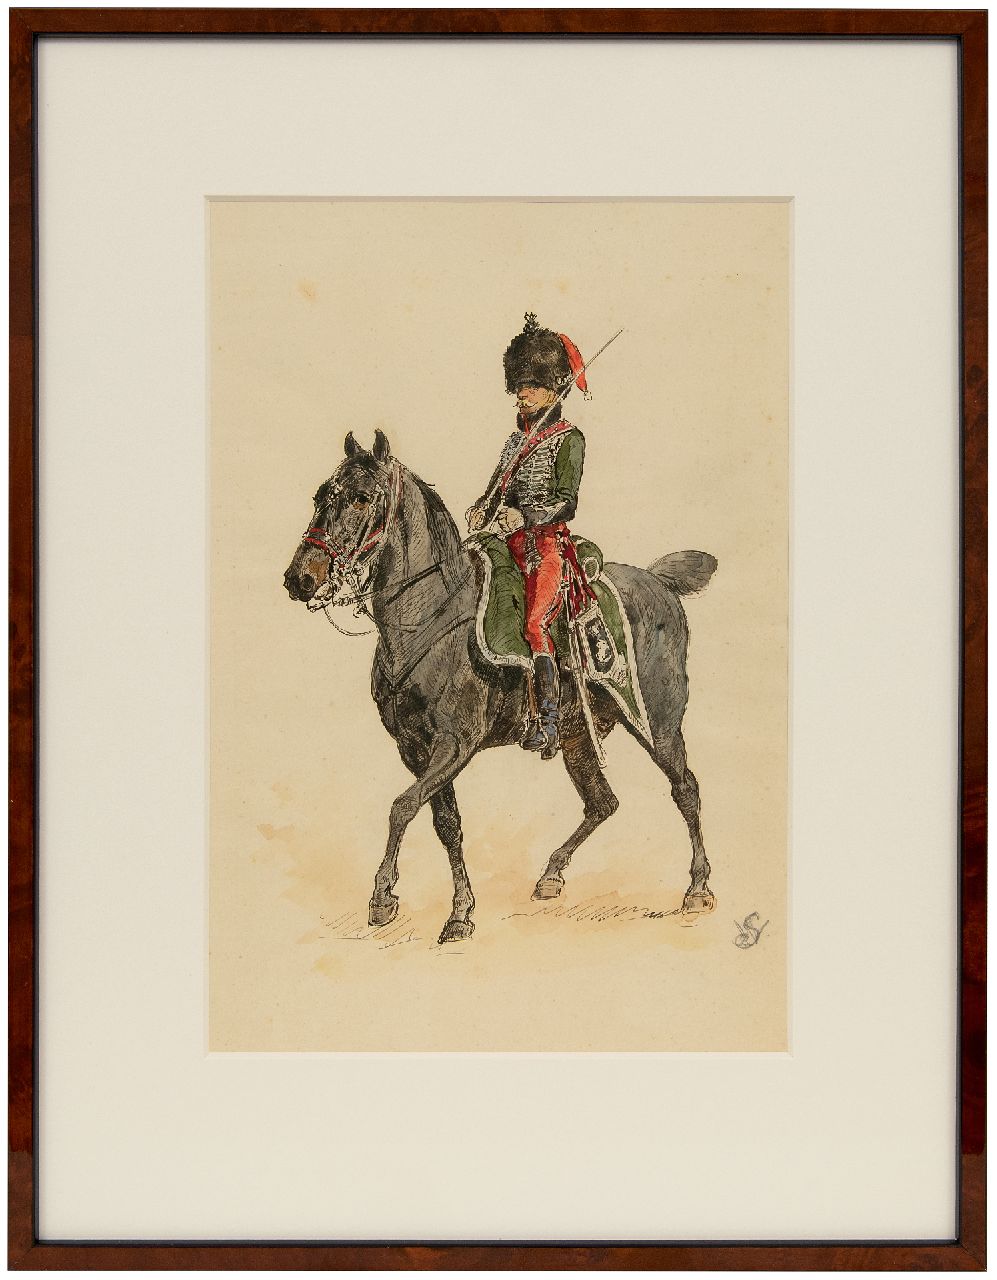 Staring W.C.  | Willem Constantijn Staring | Aquarellen en tekeningen te koop aangeboden | Dragonder te paard, inkt en aquarel op papier 33,5 x 21,0 cm, gedateerd 1 April 1906 (in potlood)